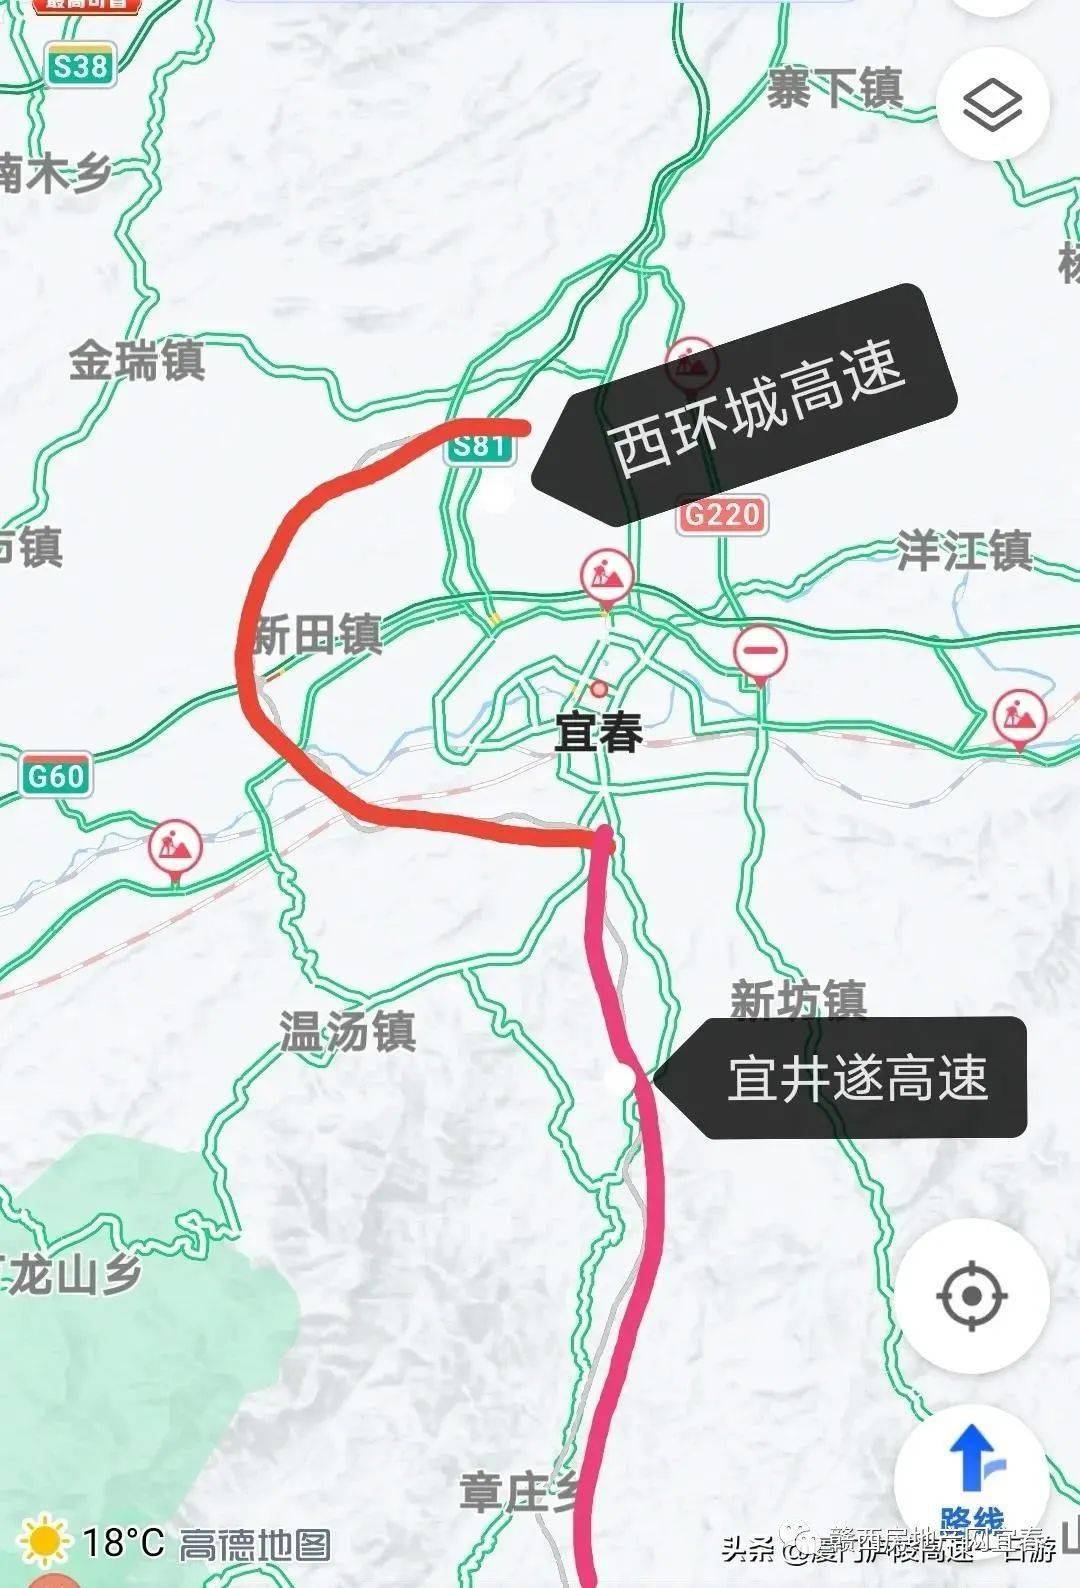 宜春市环城高速是这样的,未来将形成一个圆形的.